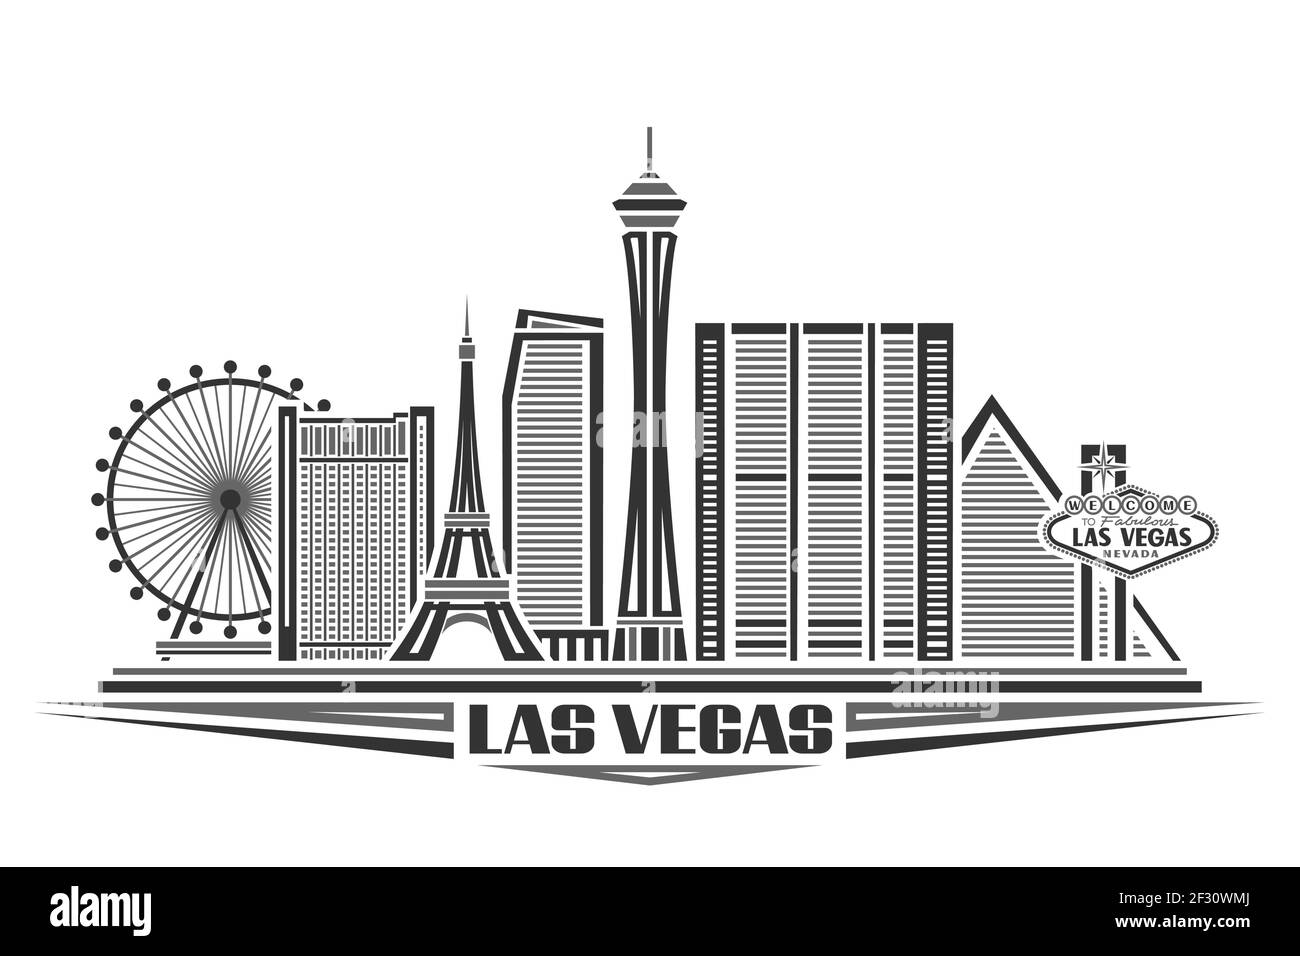 Illustrazione vettoriale di Las Vegas, poster monocromatico con edifici dal design semplice e punti di riferimento, concetto urbano con il paesaggio e l'arredamento moderni della città Illustrazione Vettoriale